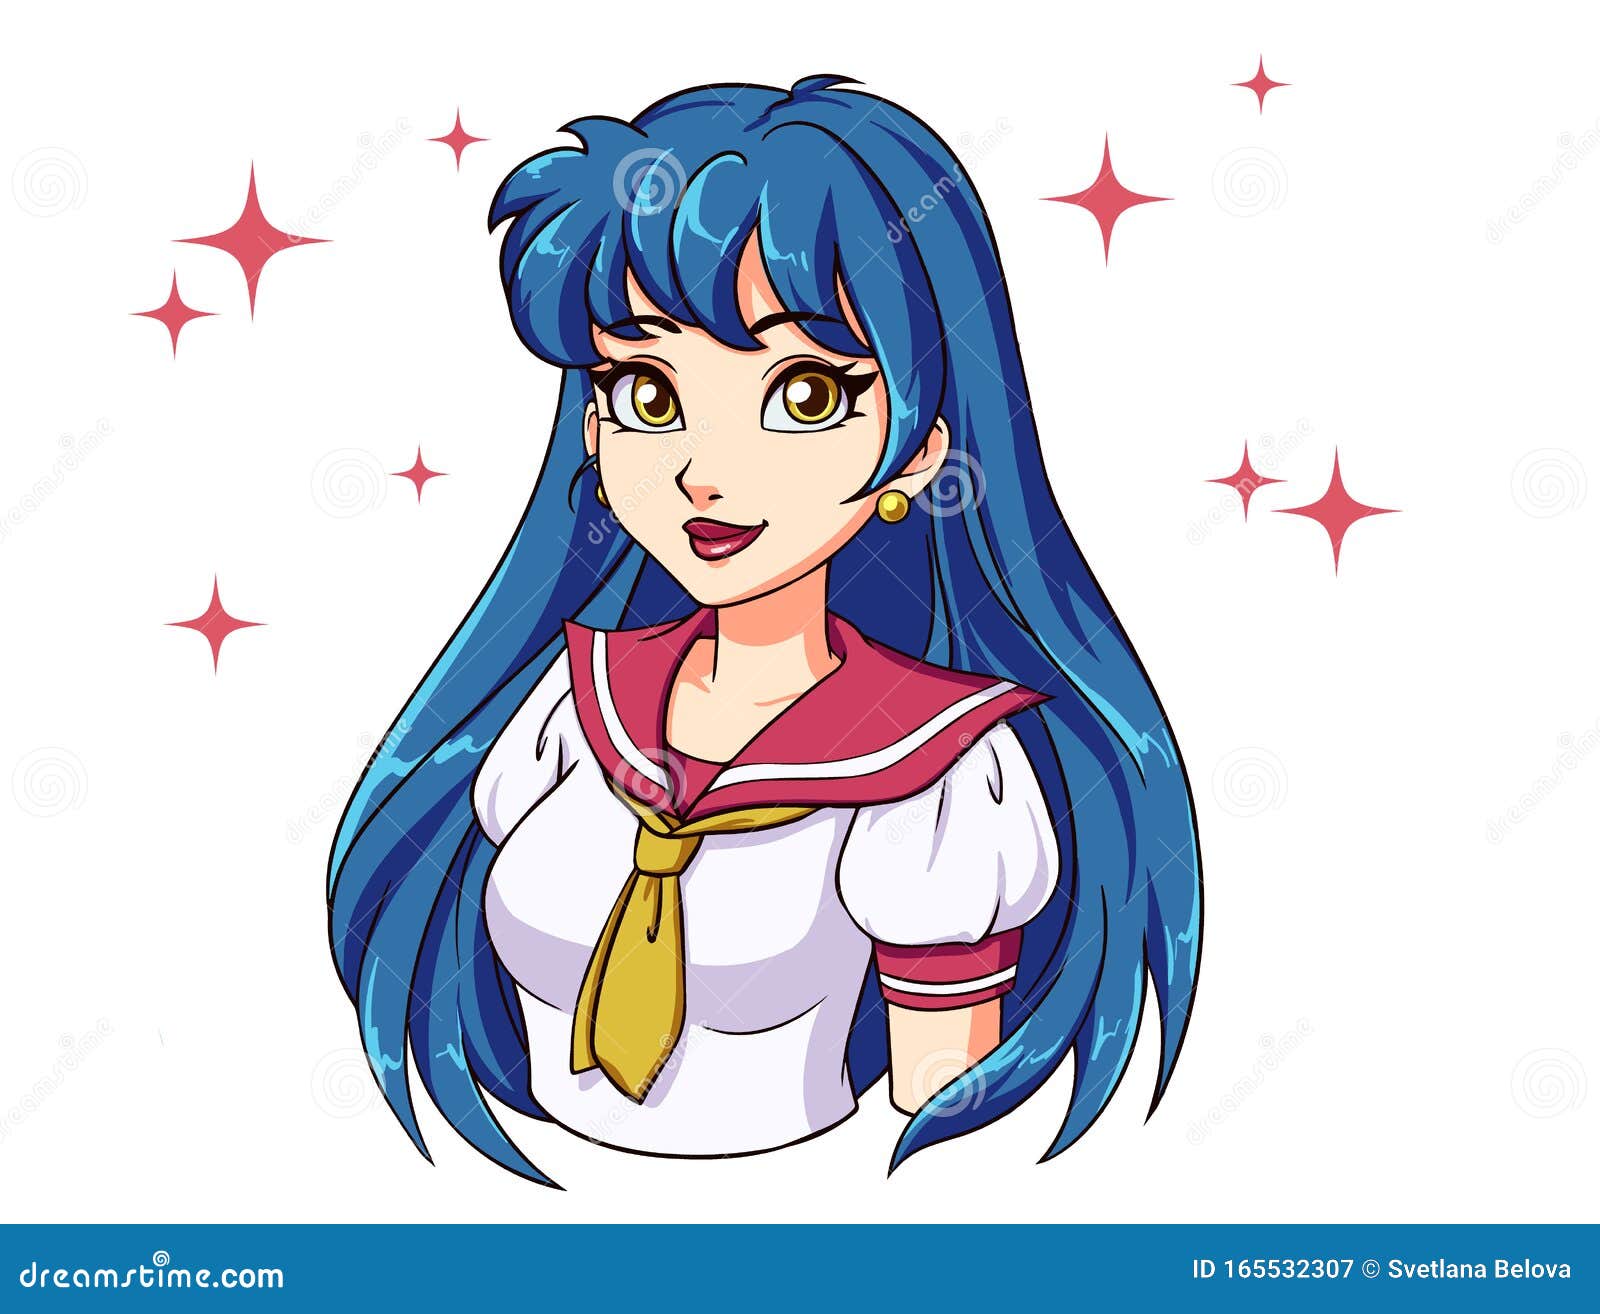 Cute cartoon girl with blue hair - wide 11